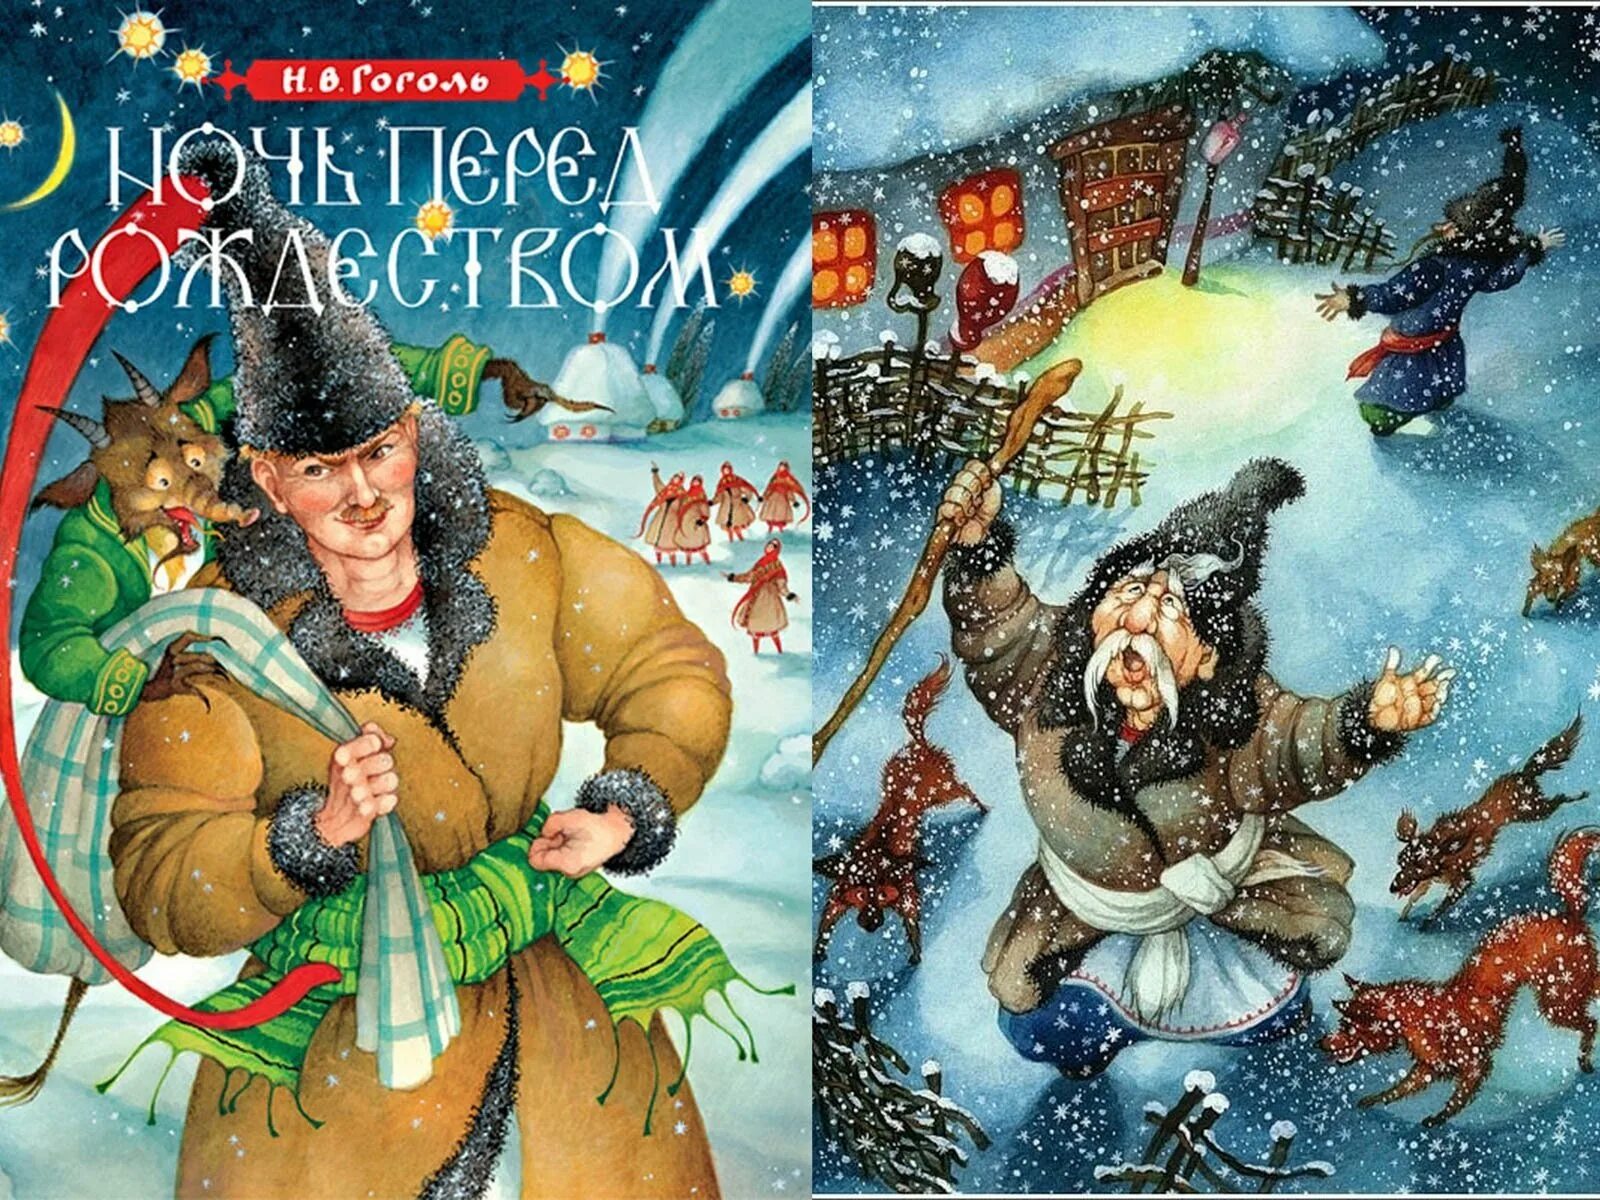 Н В Гоголь ночь перед Рождеством. Иллюстрации к книге Гоголя ночь перед Рождеством. Иллюстрацию к произведению н.в.Гоголя "ночь перед Рождеством".